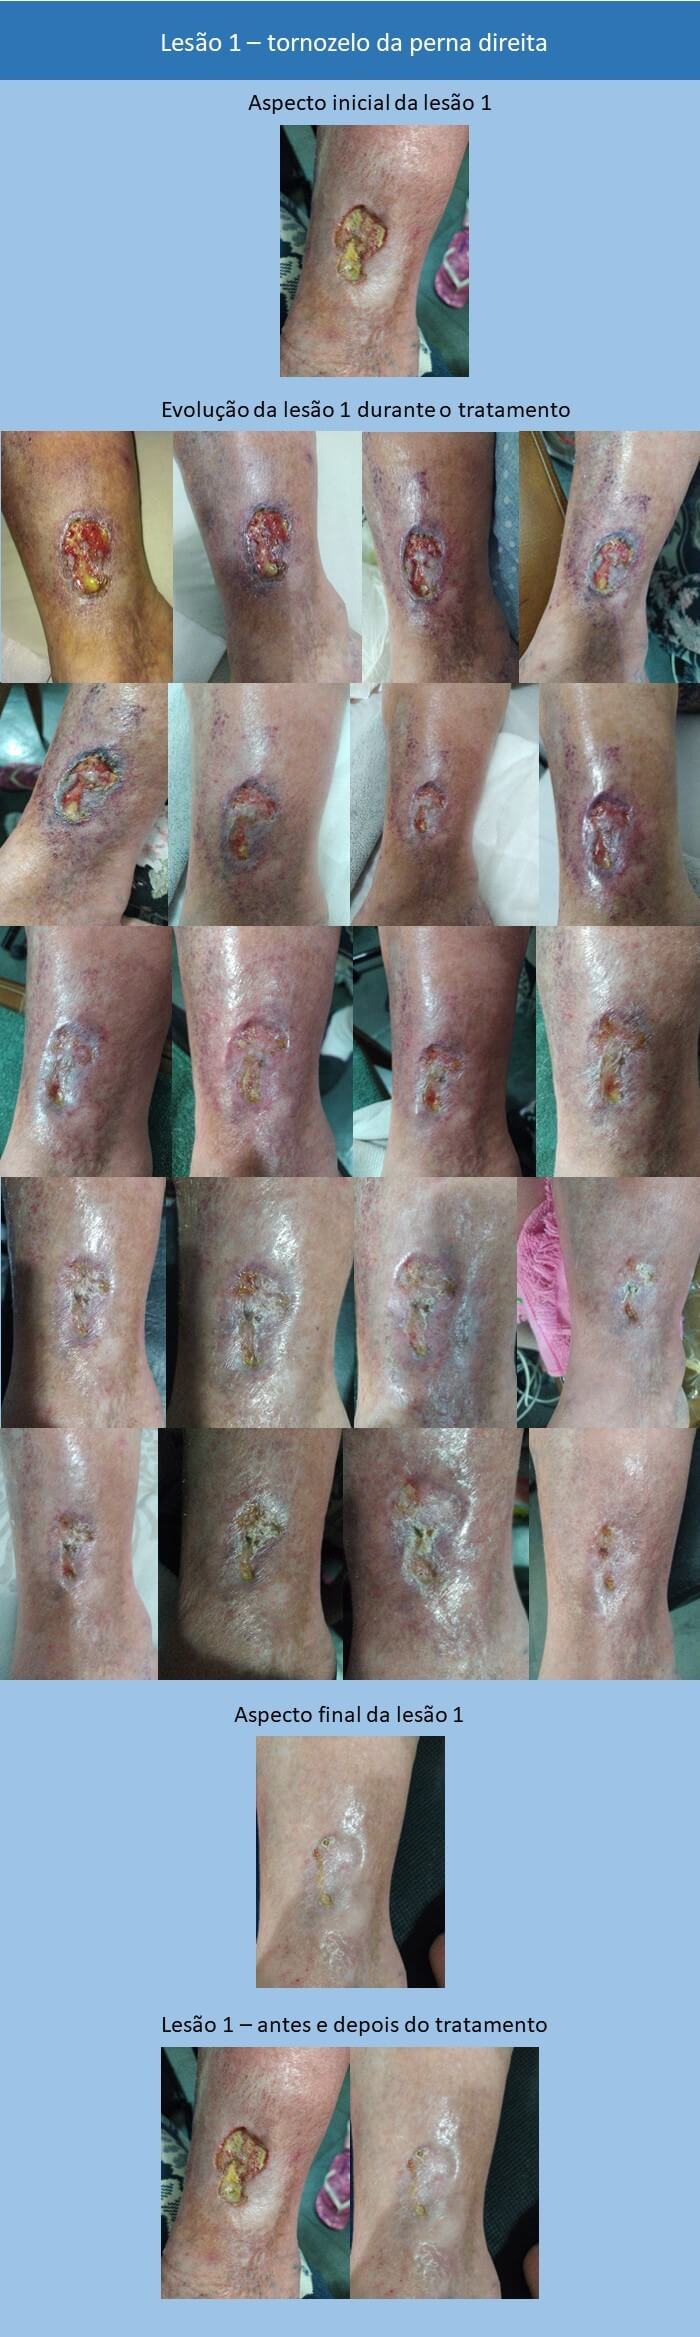 Feridas nas pernas - tratamento com laser-ledterapia